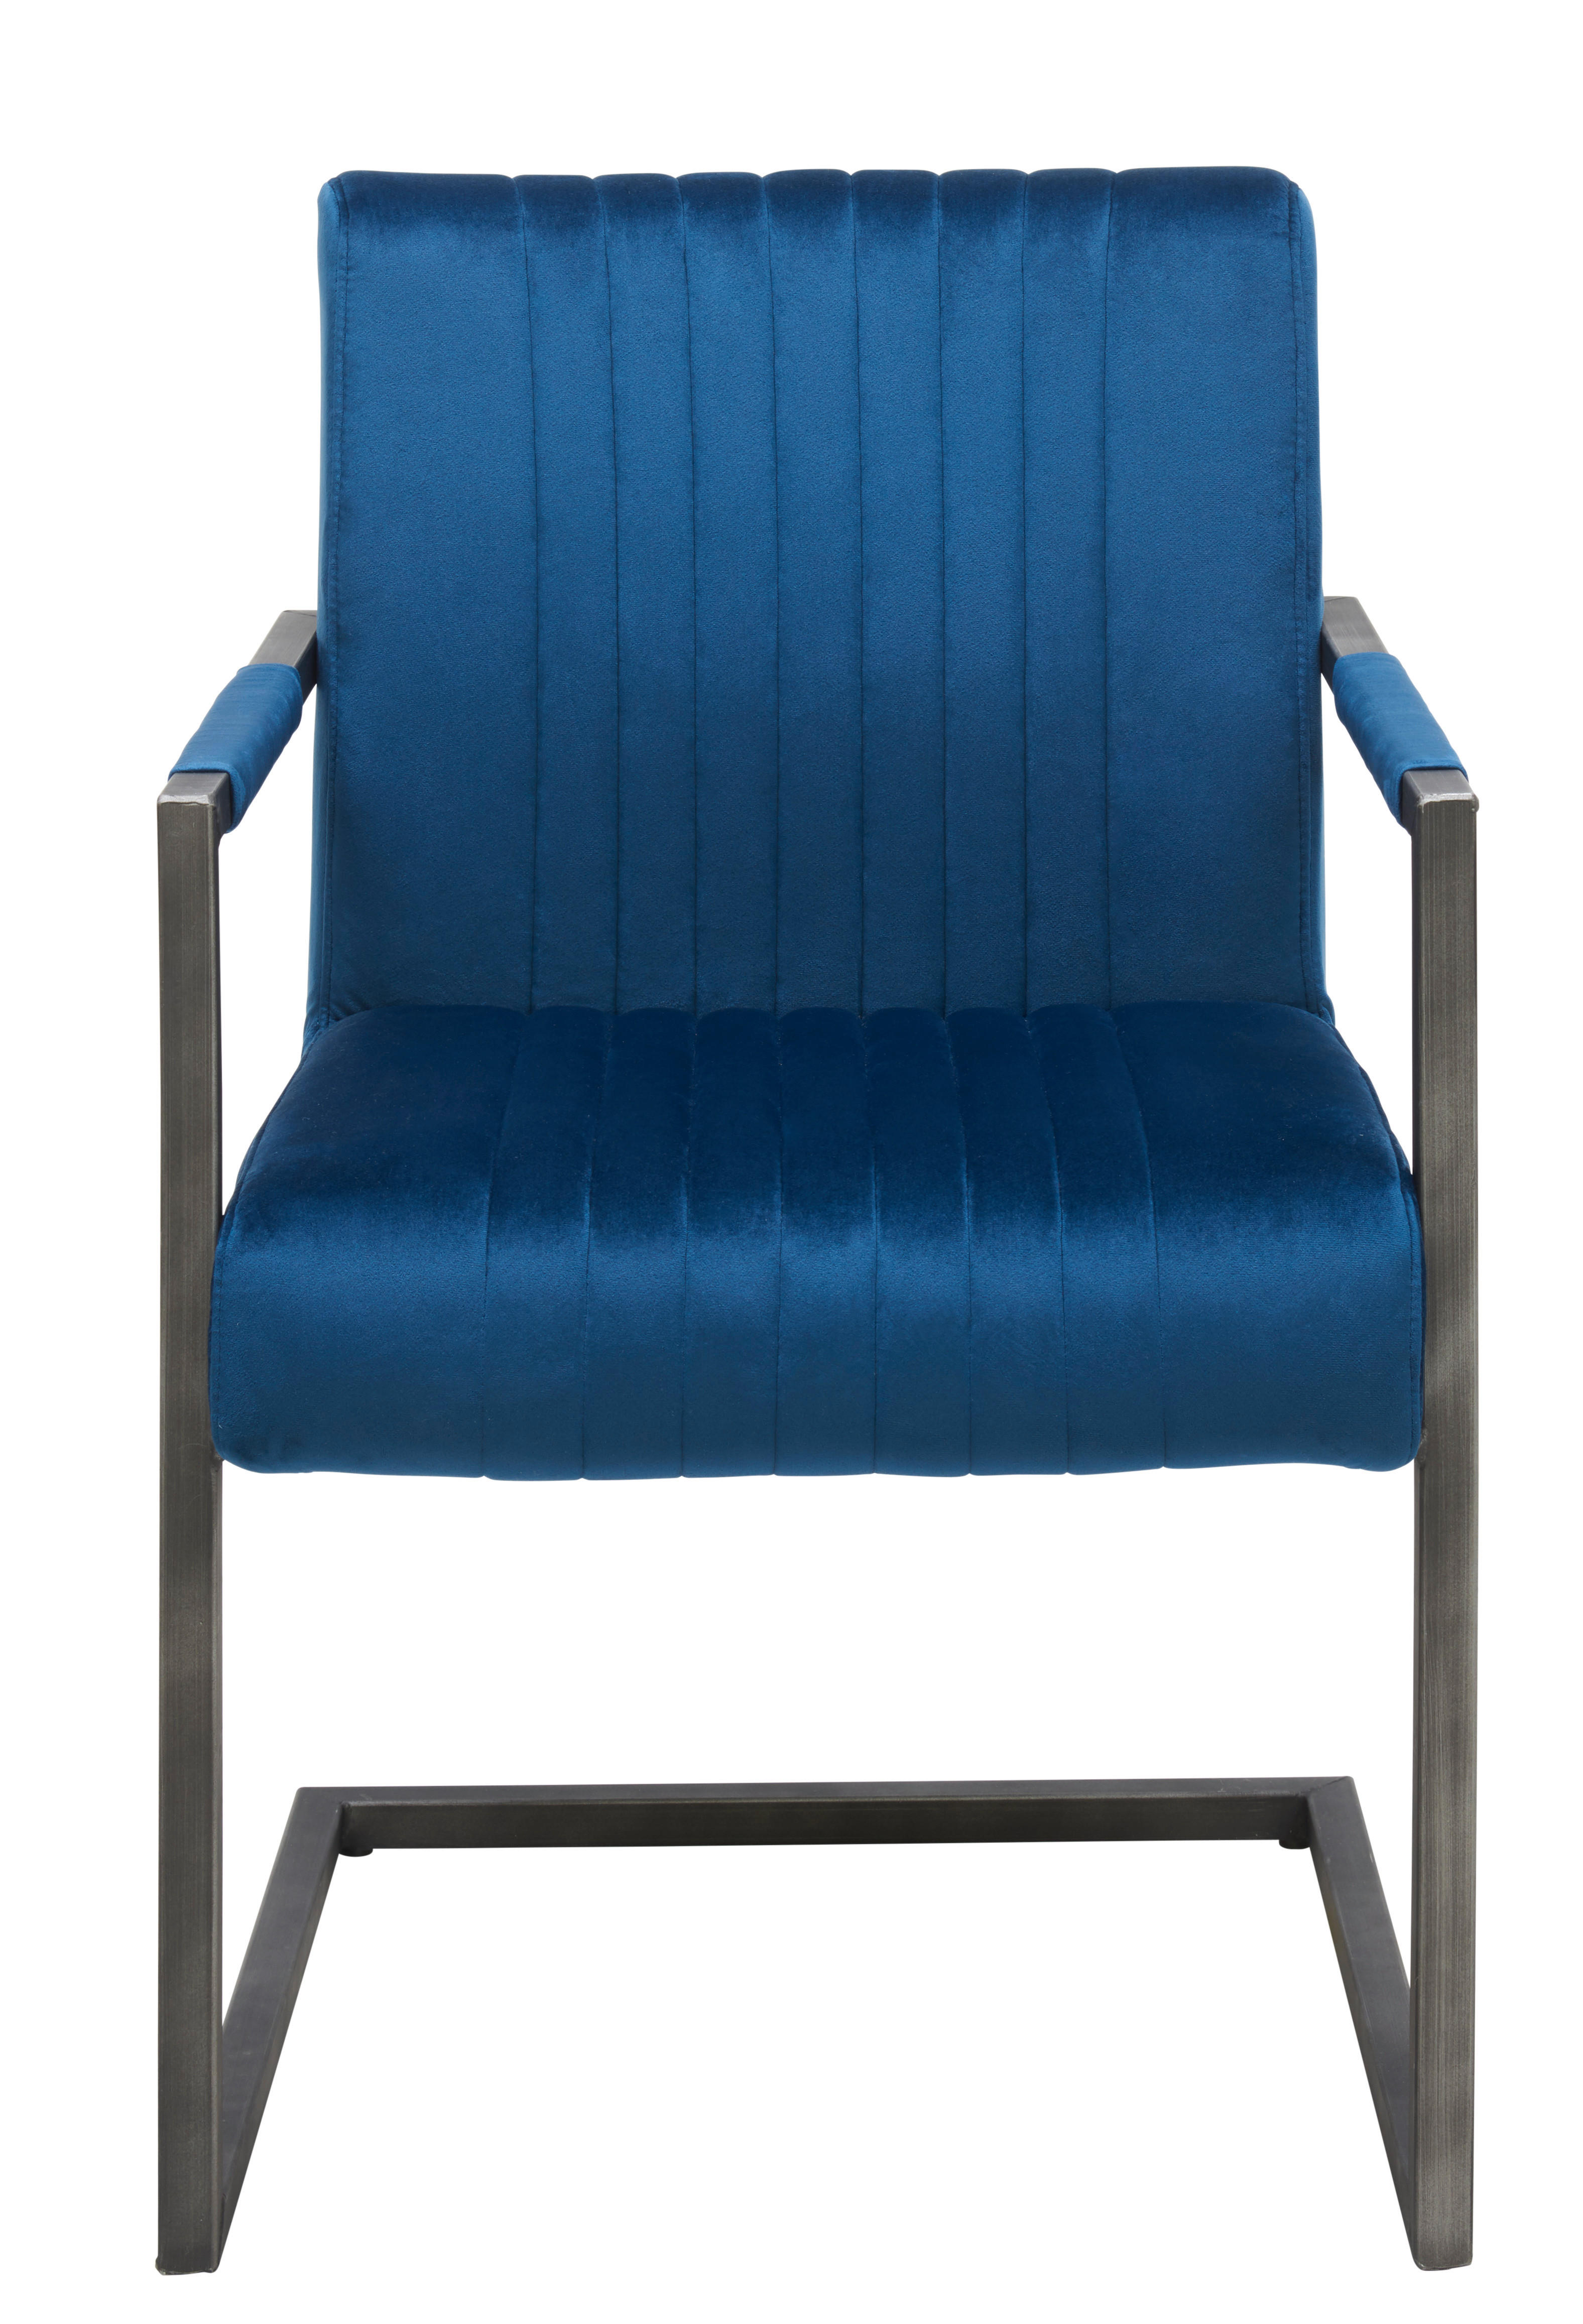 SCAUN CU BRAȚE in albastru, negru  - albastru/negru, Trend, metal/textil (54/91/64cm) - Ambia Home